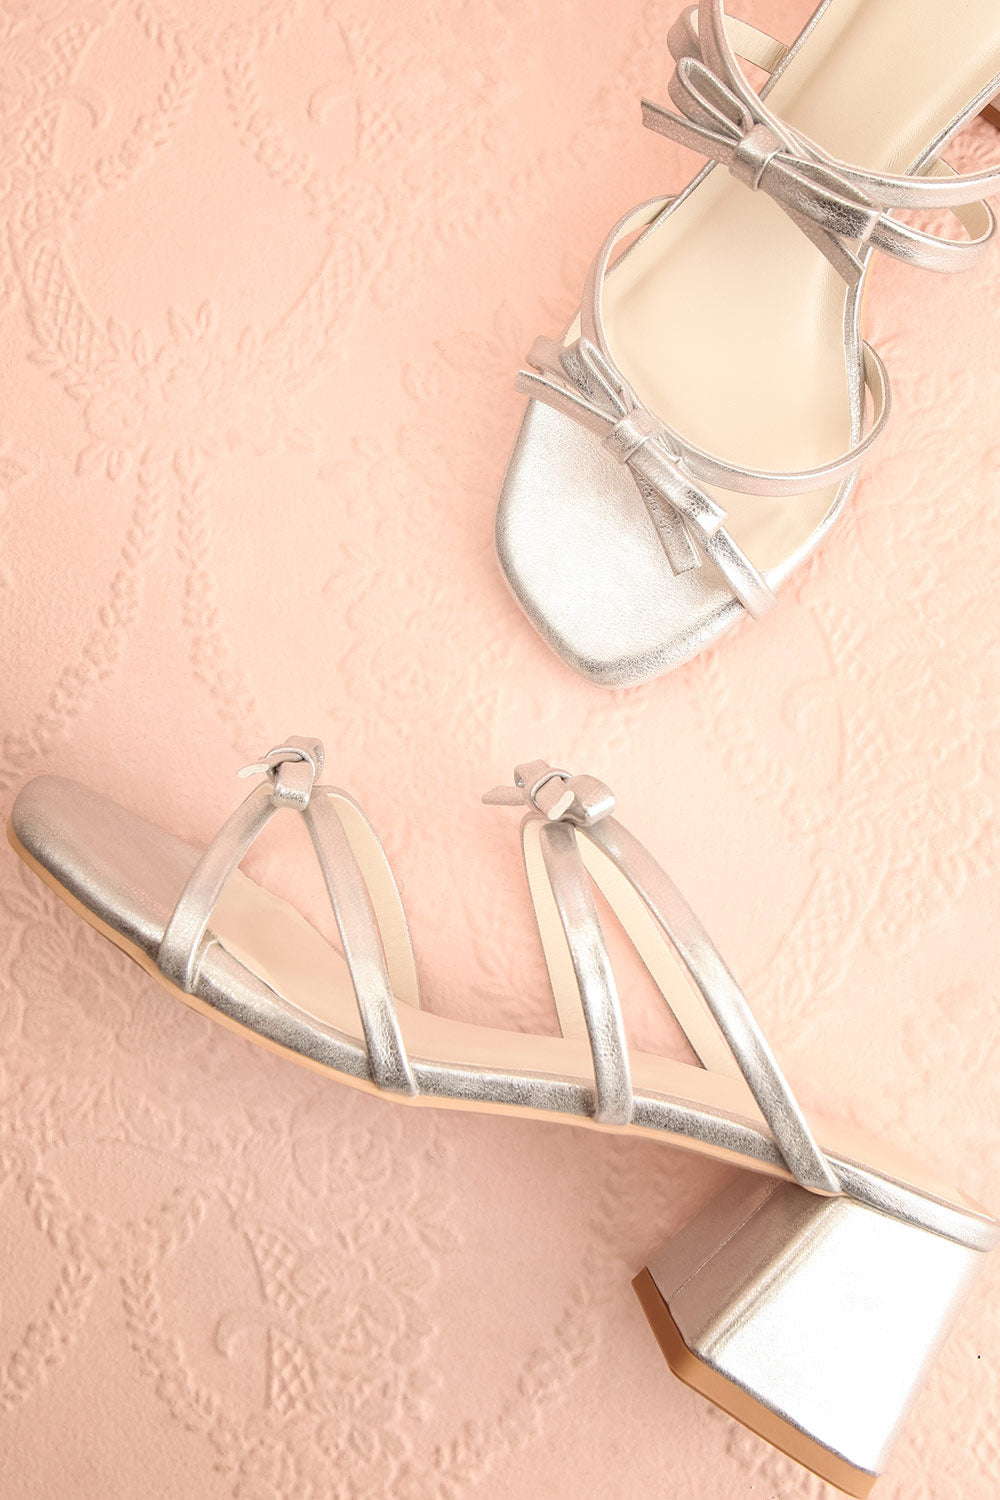 Macy Silver Heeled Sandals w/ Bows | Maison garçonne flat view